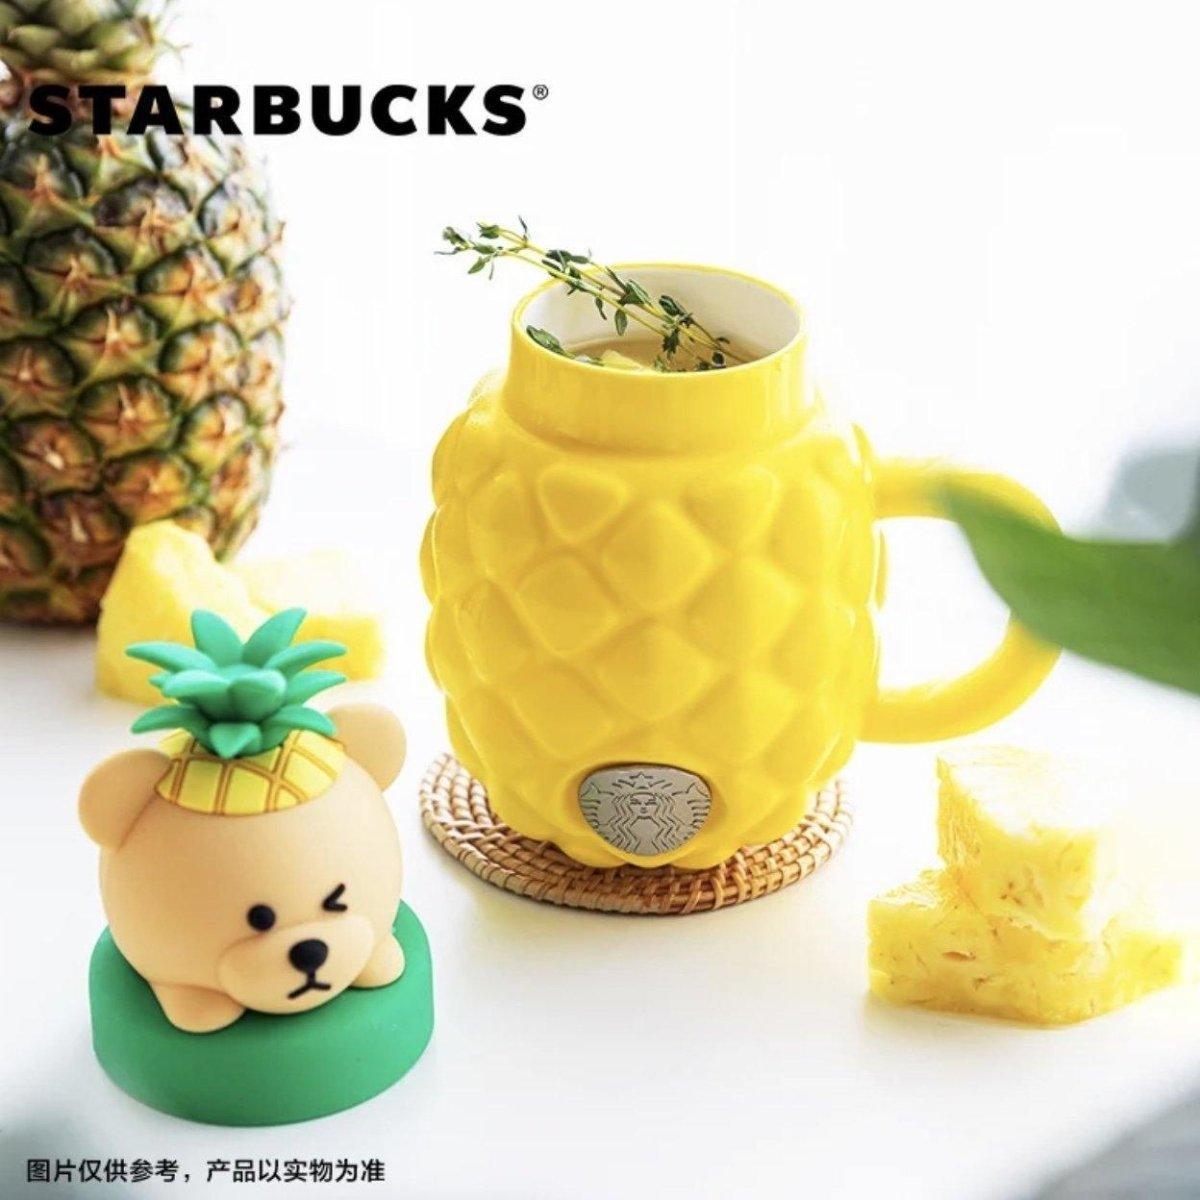 Starbucks China Yellow Pineapple Ceramic Mug (Bright Summer)